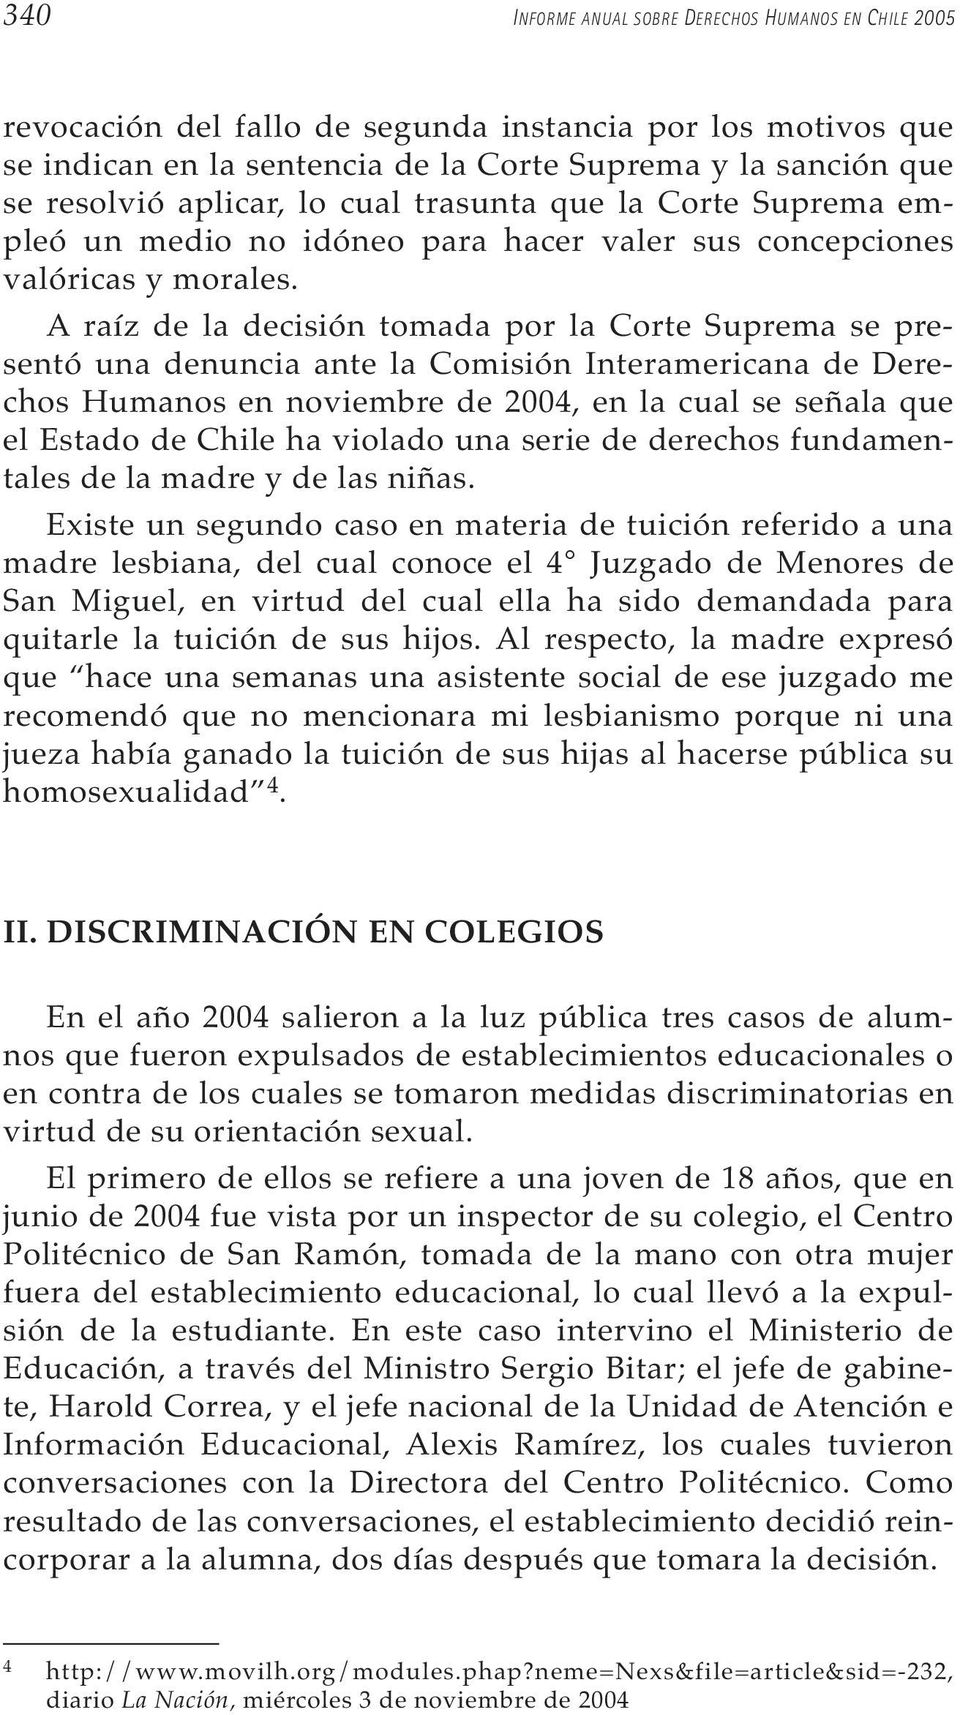 A raíz de la decisión tomada por la Corte Suprema se presentó una denuncia ante la Comisión Interamericana de Derechos Humanos en noviembre de 2004, en la cual se señala que el Estado de Chile ha